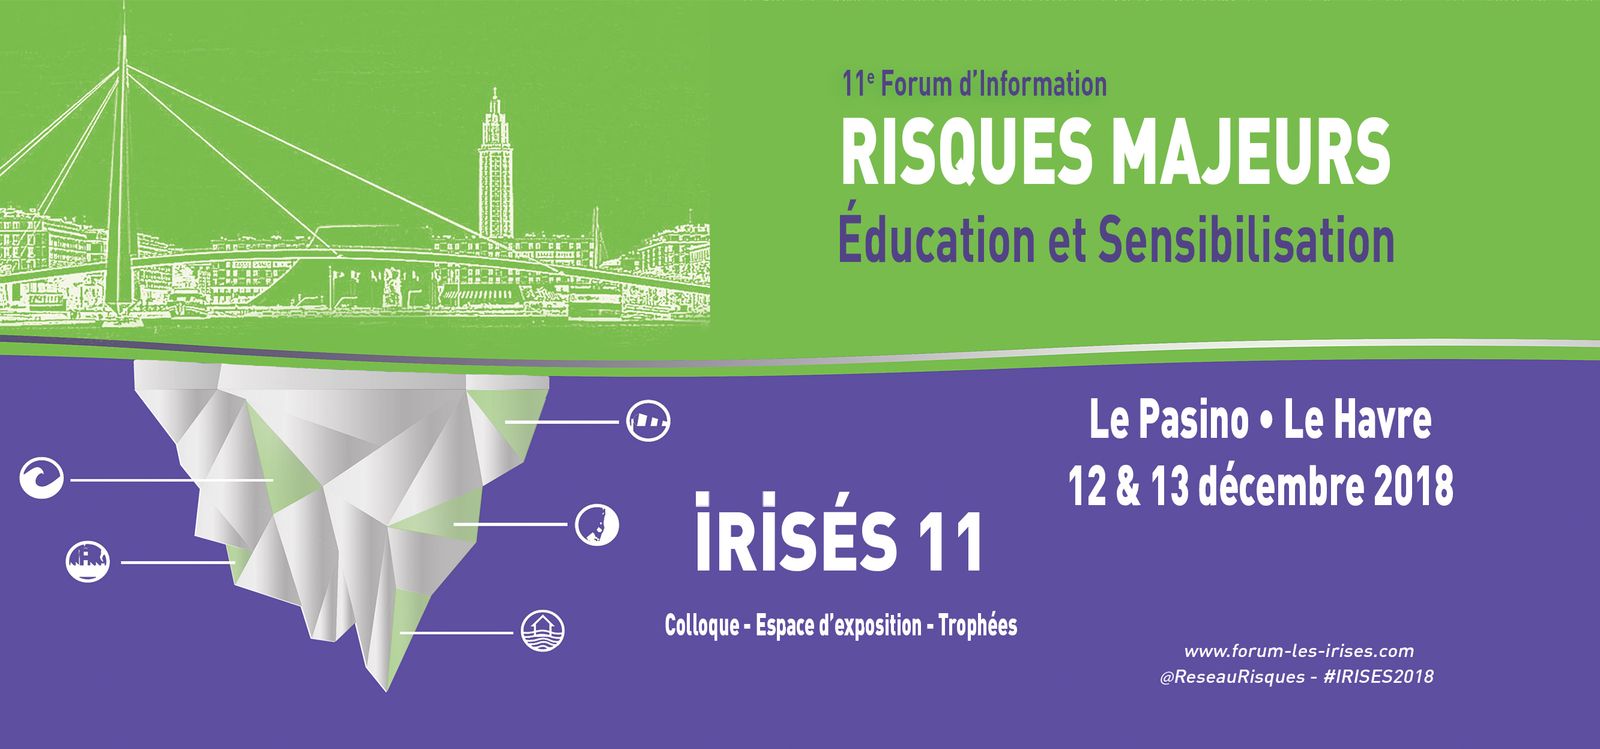 11e Forum d’Information sur les Risques majeurs, Éducation et Sensibilisation (IRISÉS) au Havre